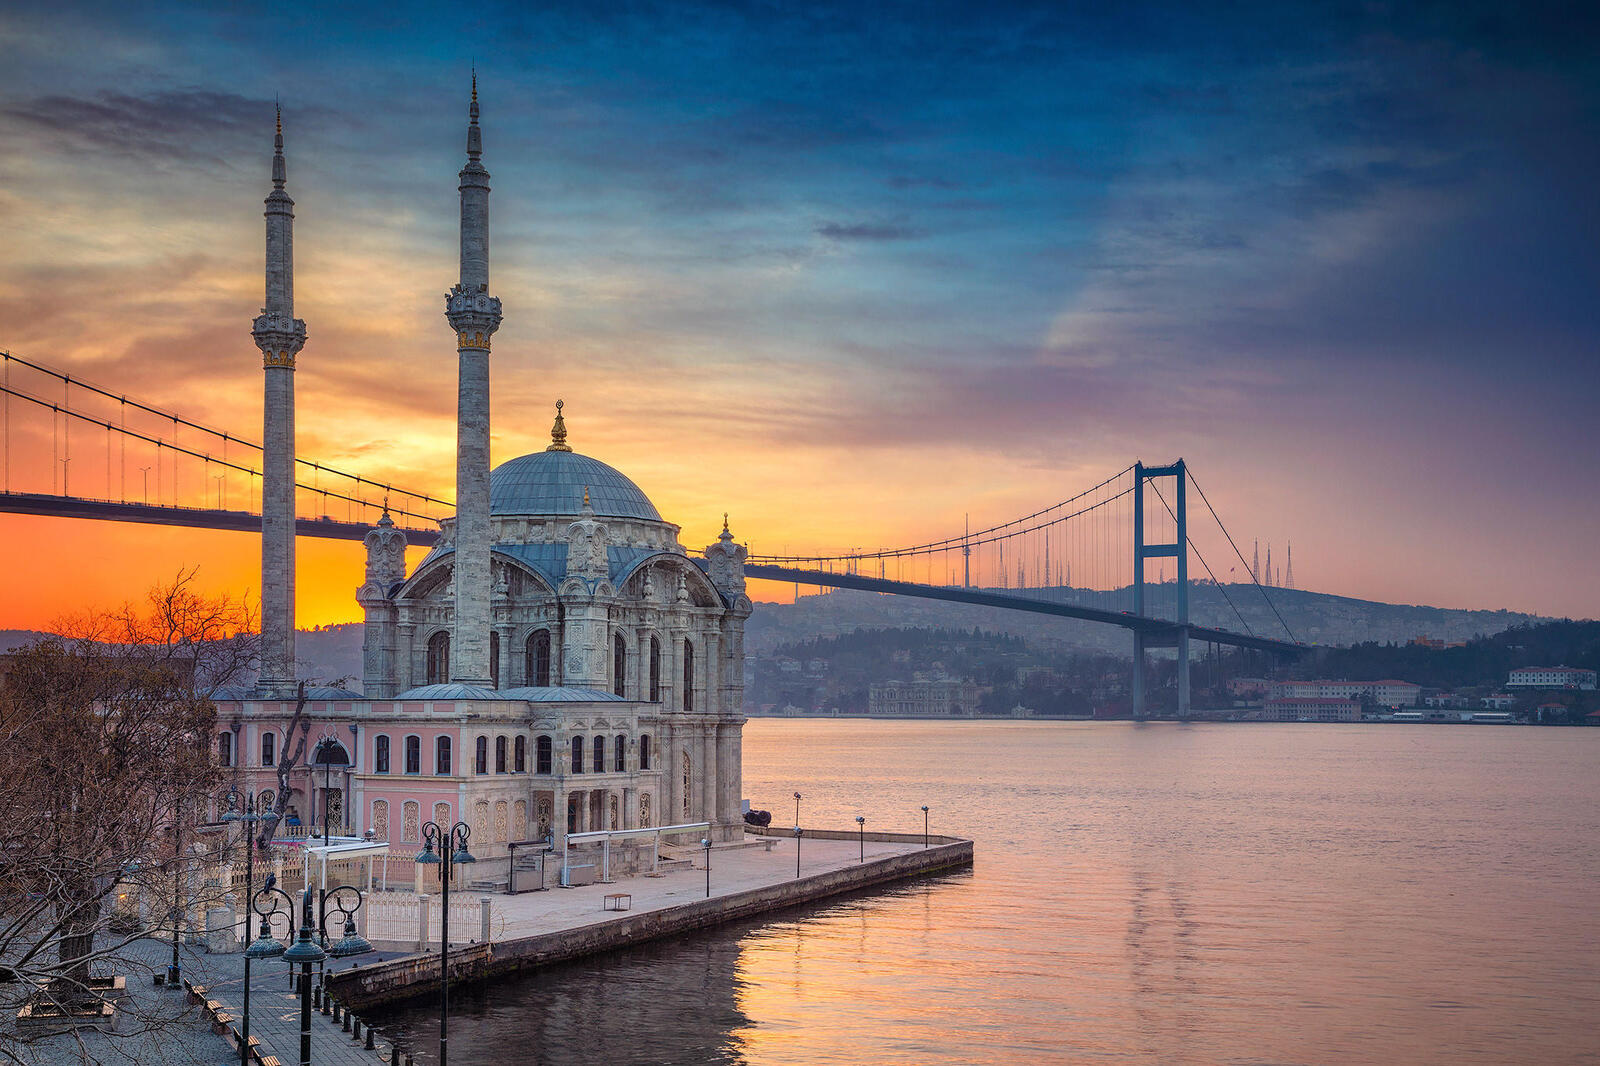 Обои Стамбул Мечеть Ортакой Босфорский мост на рабочий стол